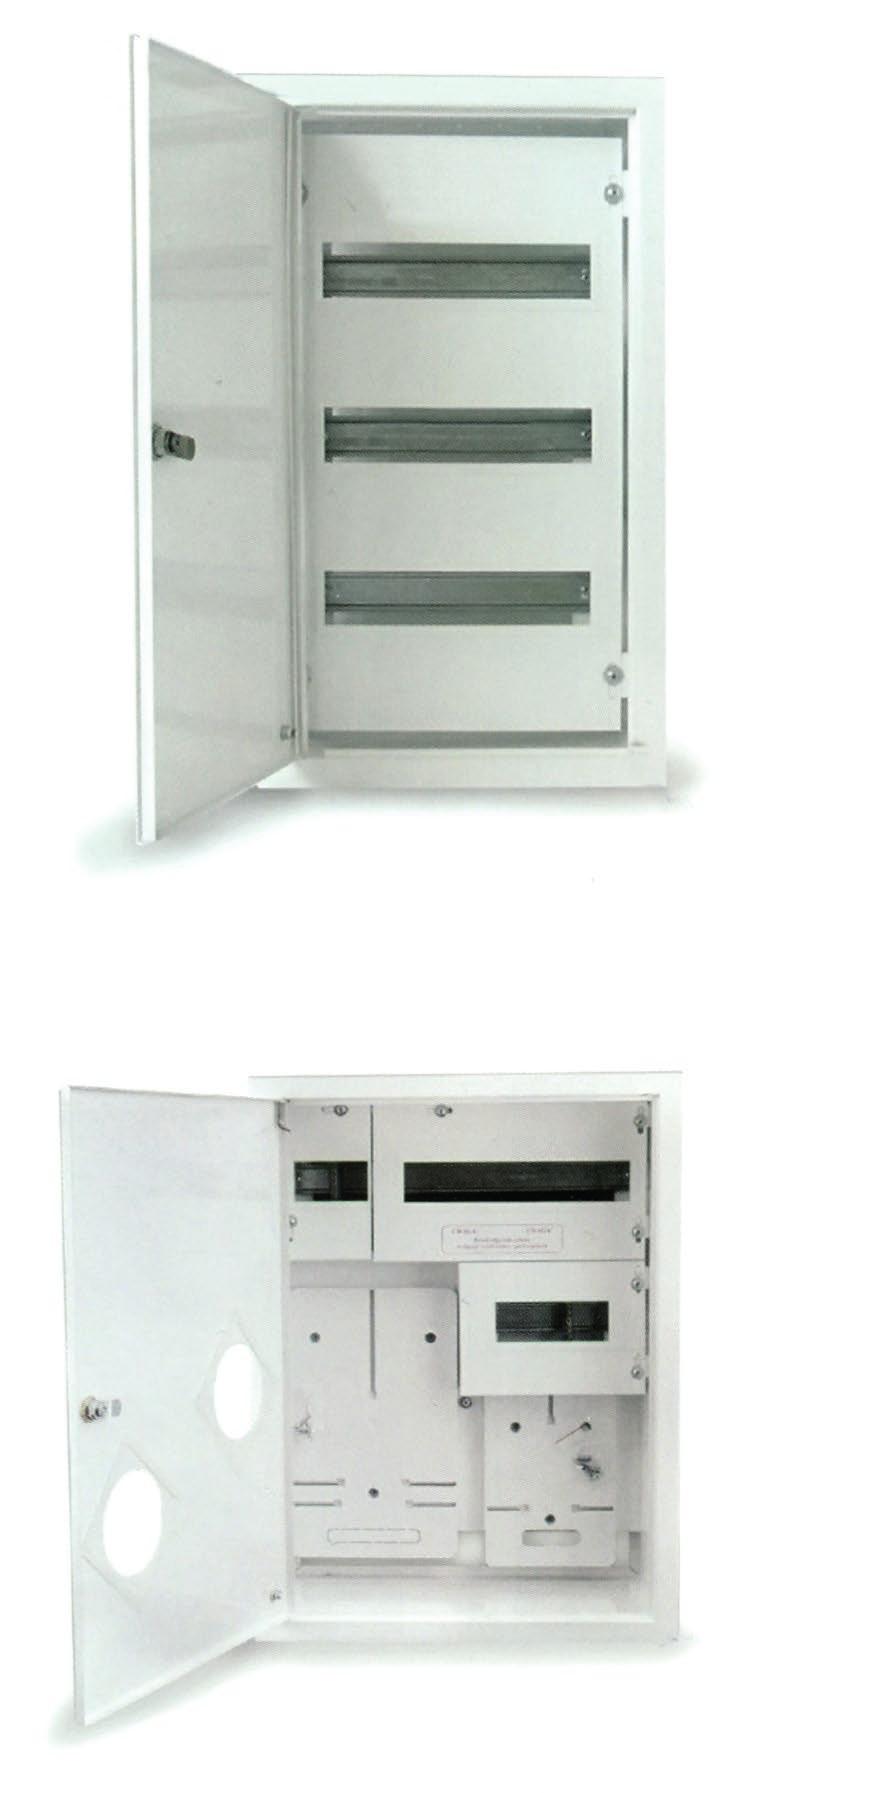 BUDOW konstrukcja wykonana z blachy czarnej uszczelnione drzwi opcja drzwiczek z wizjerem zamek centralny opcja czteropunktowego ryglowania drzwi system zamykania umożliwia zastosowanie wkładki